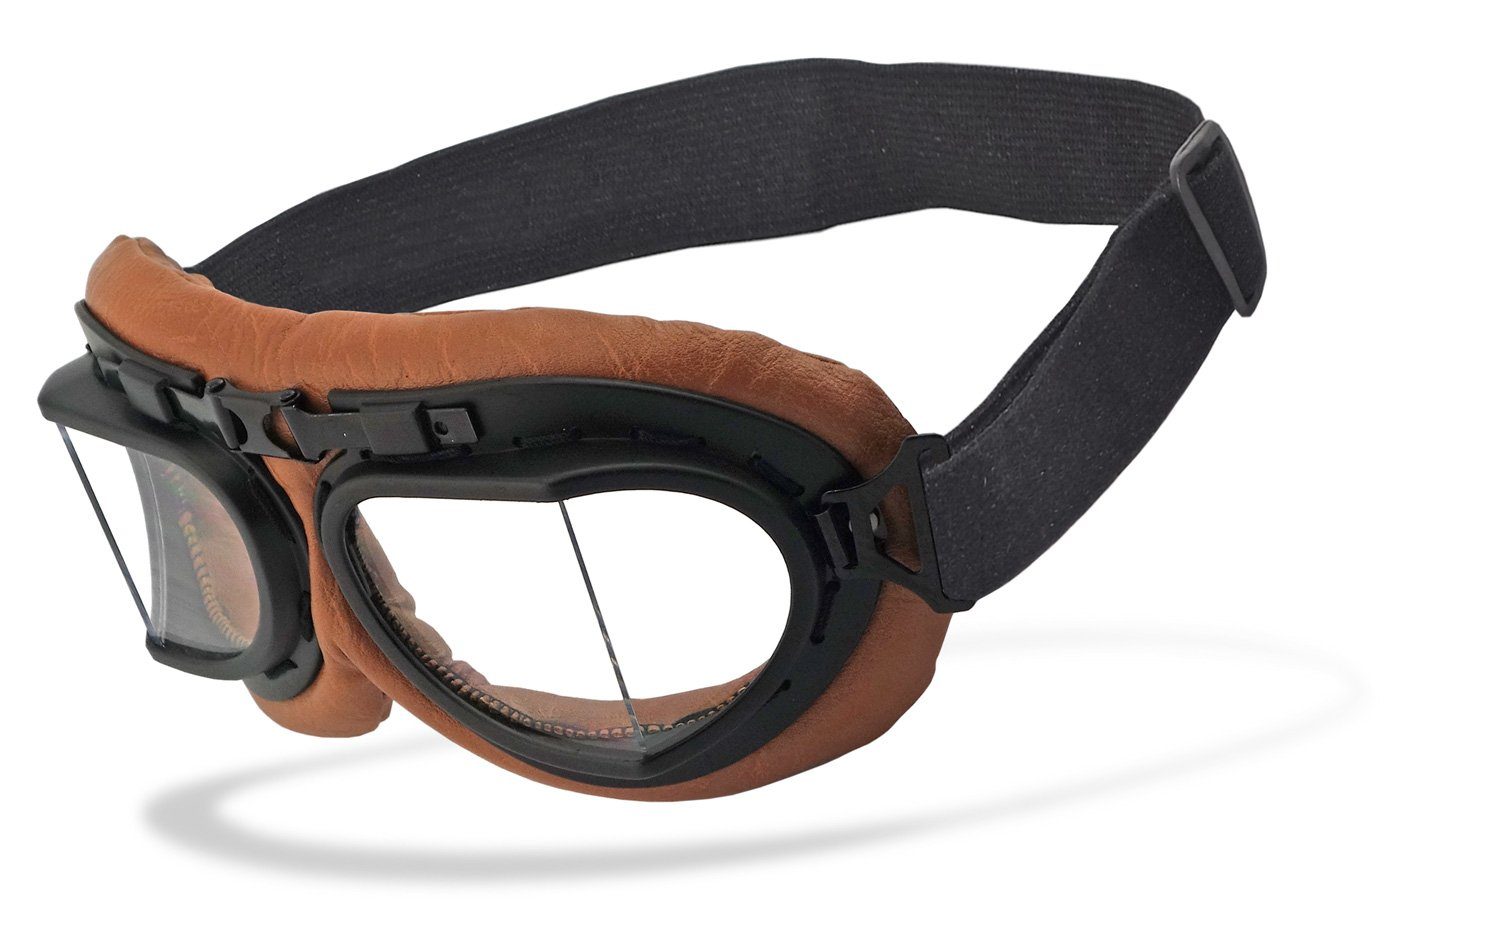 Chillout Rider Motorradbrille rb-2, Motorradbrille Sicherheitsglas mit